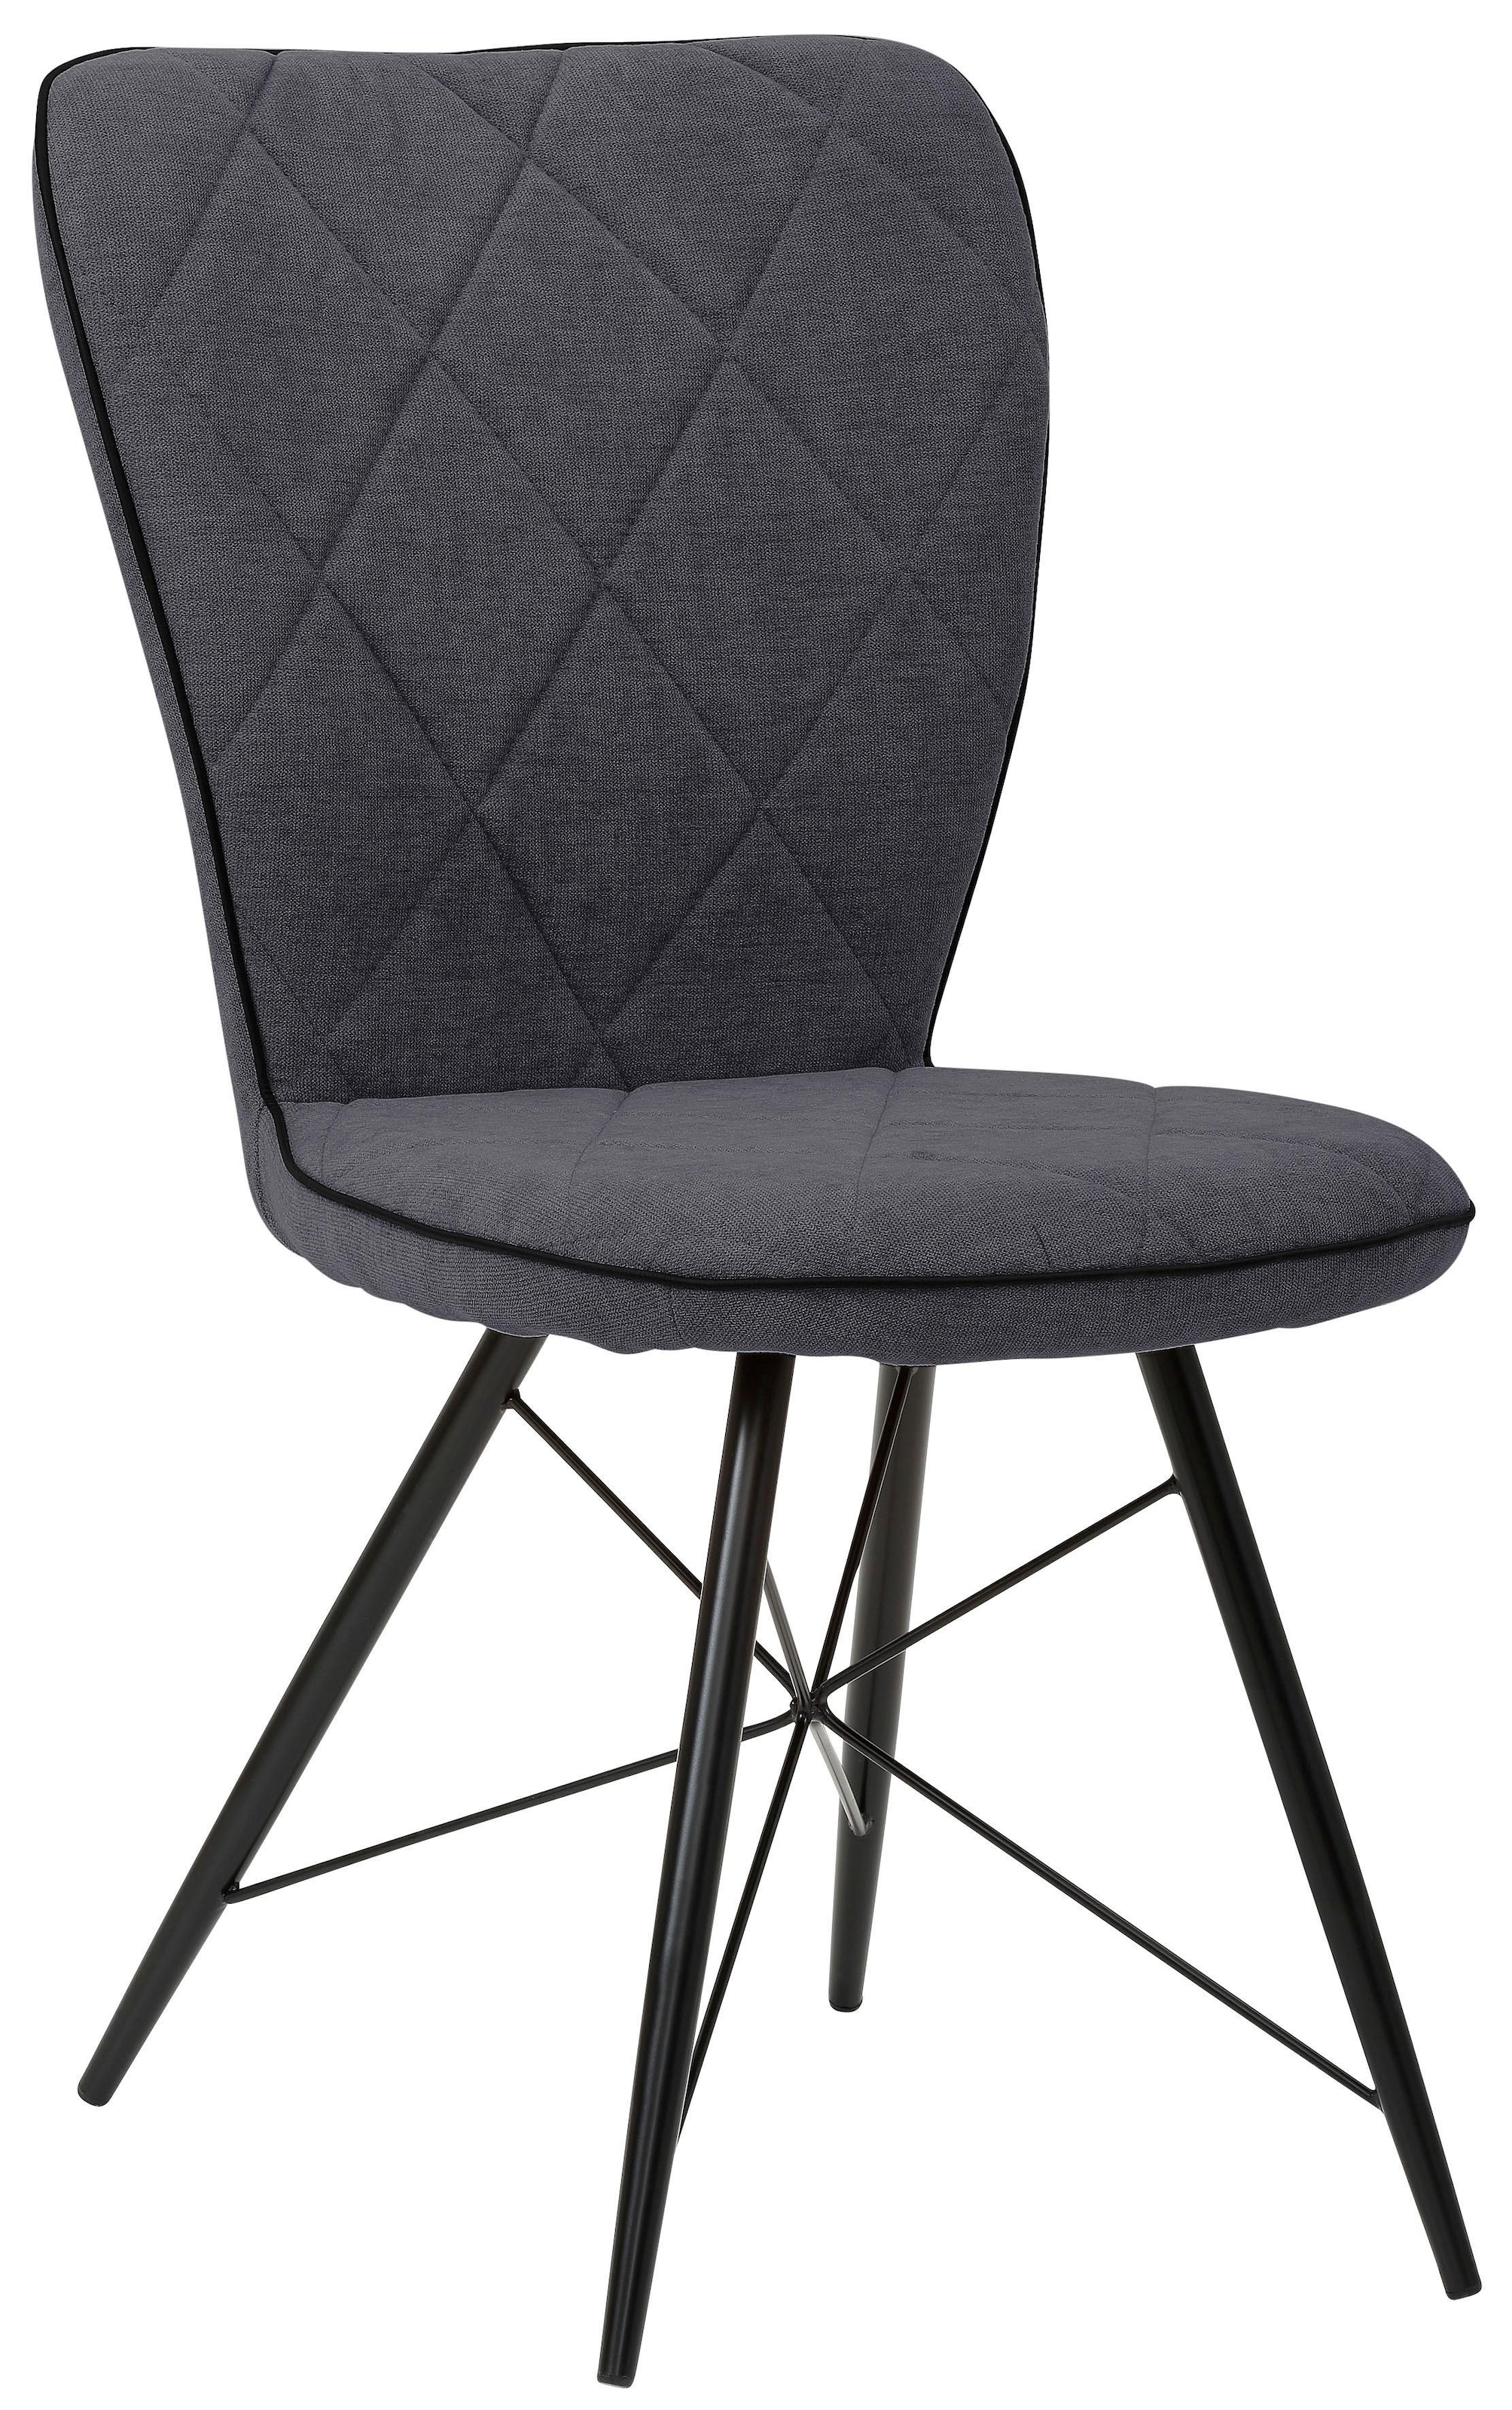 Home affaire Essgruppe »Gimbi«, (Set, 5 tlg.), bestehend aus 1 Esstisch aus Holz und 4 Stühlen mit Webstoff Bezug